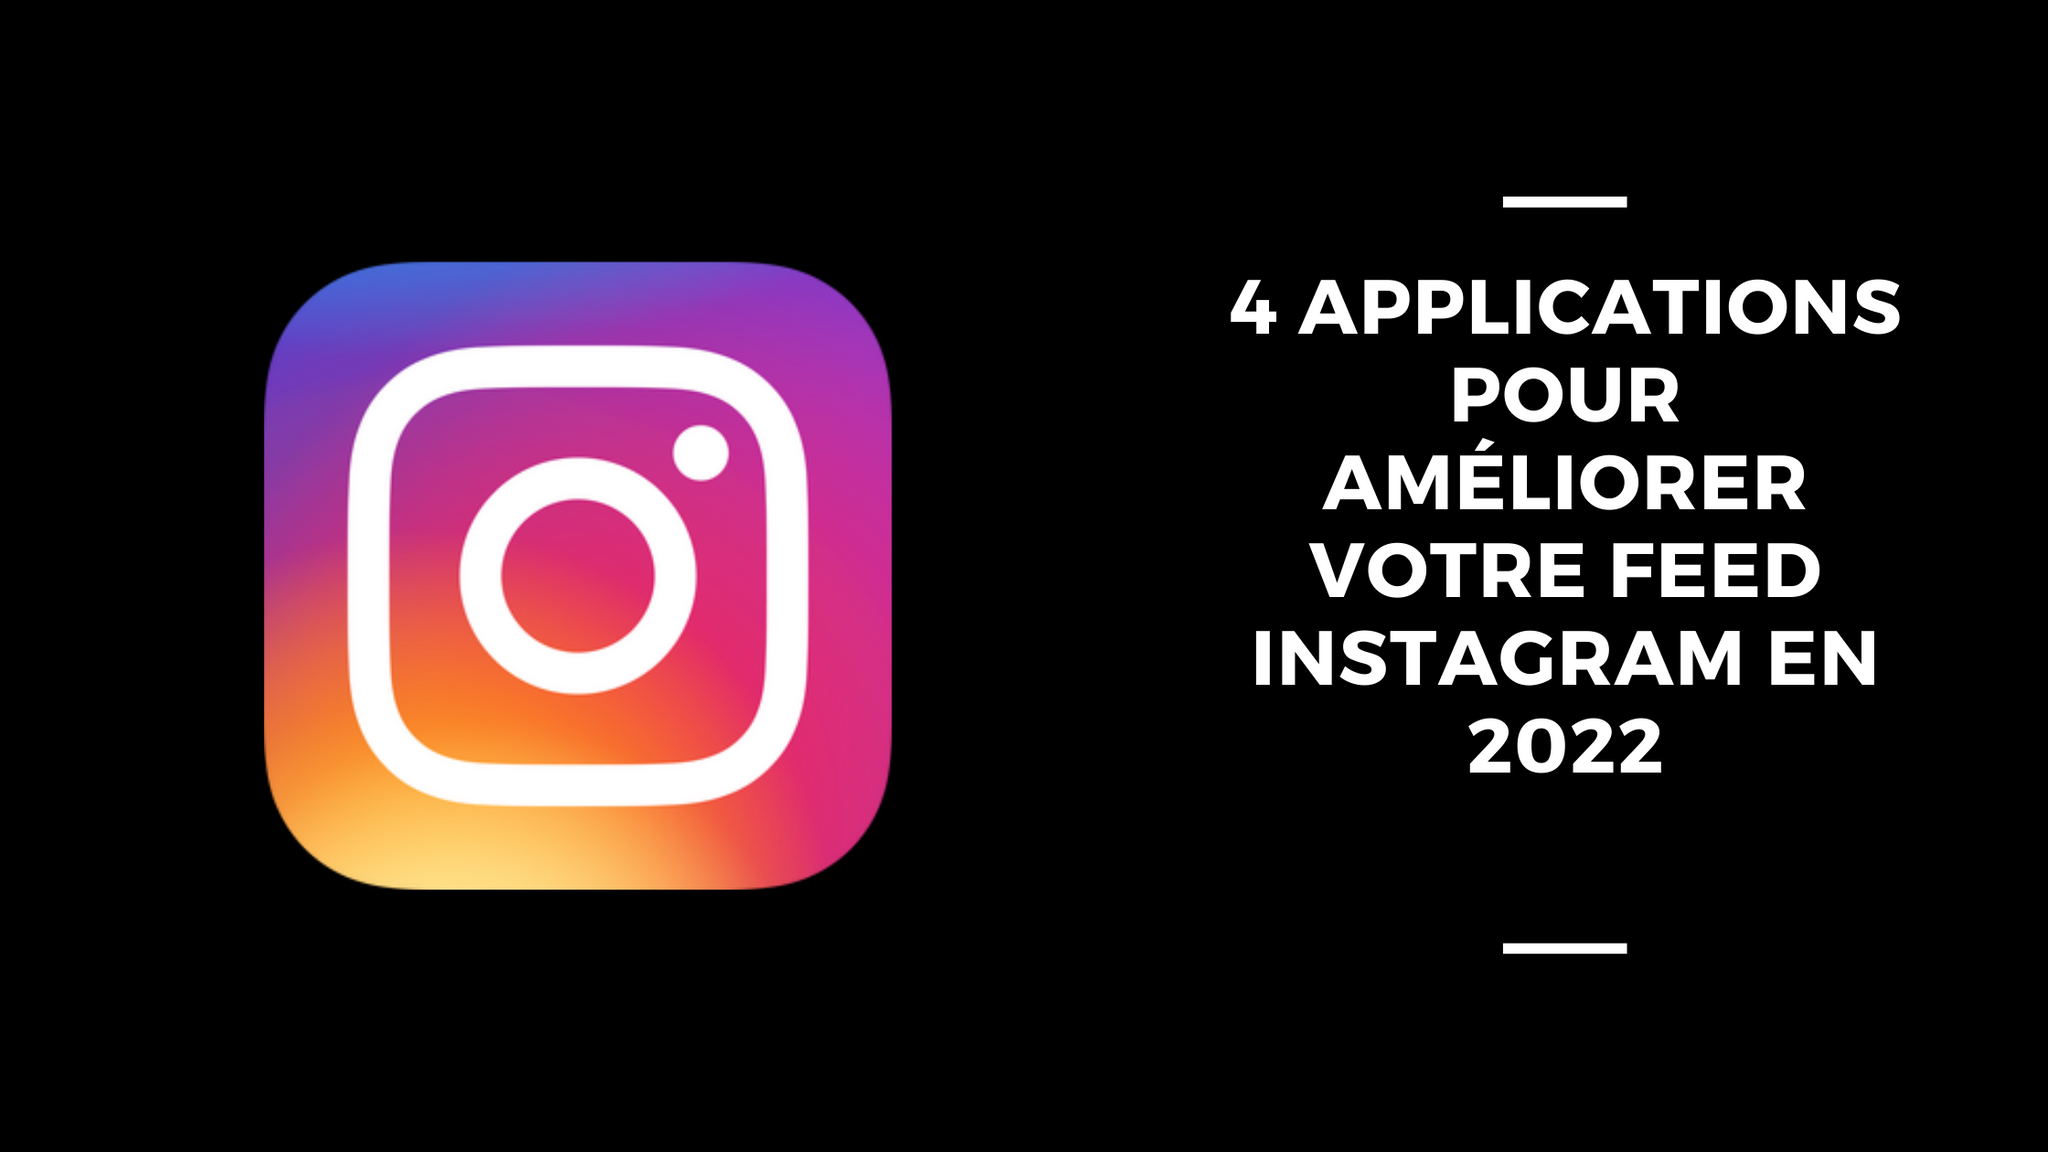 4 Applications Pour Améliorer Votre Feed Instagram en 2022